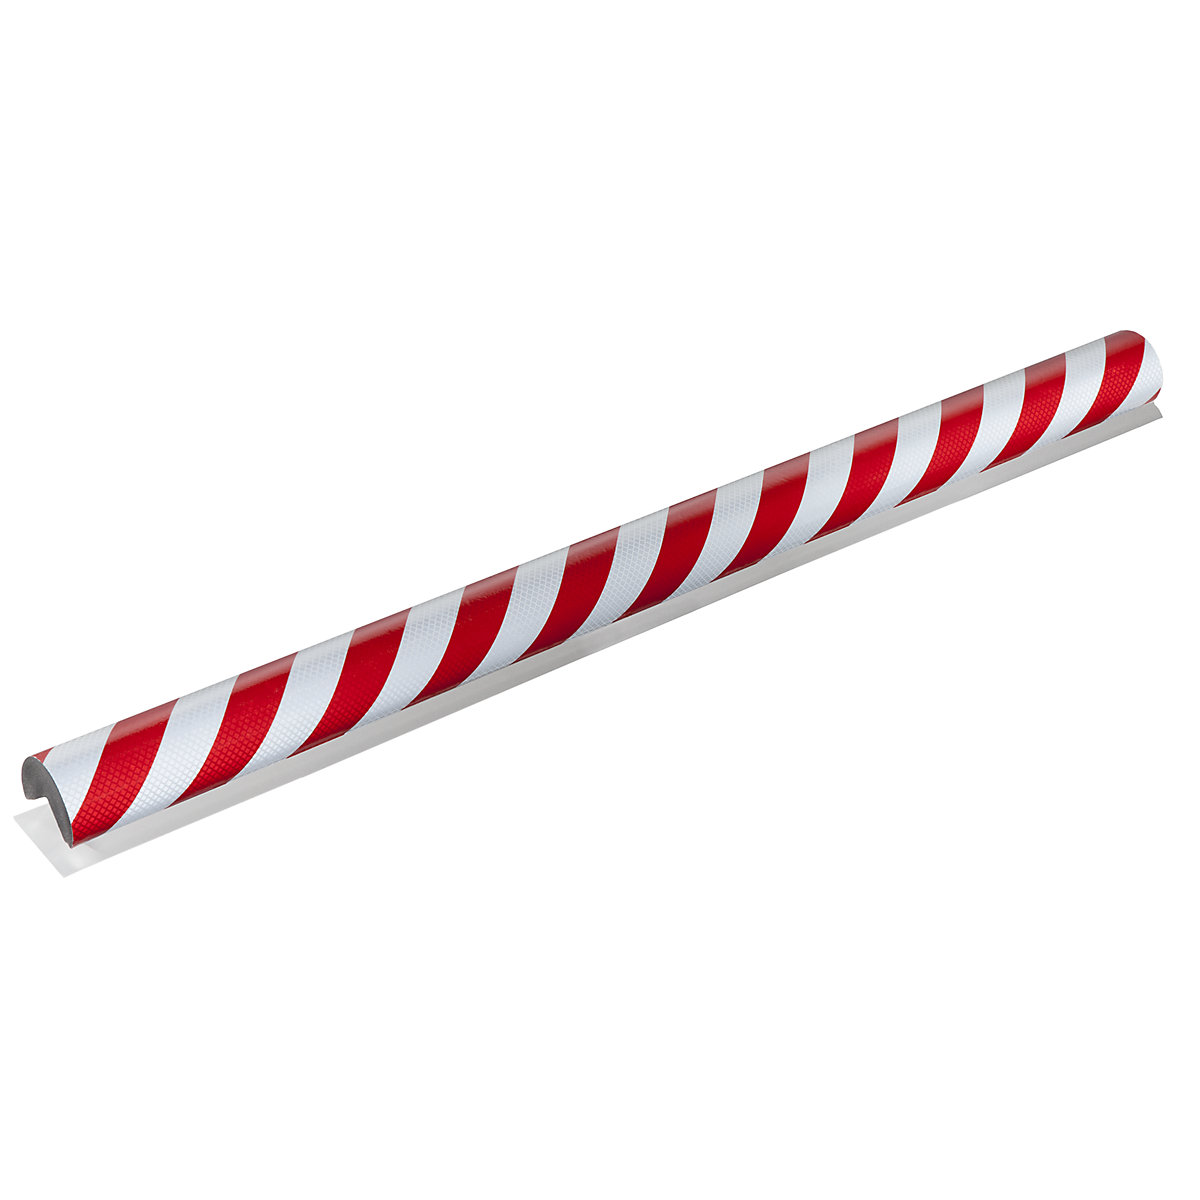 Protecție pentru colț Knuffi® – SHG, tip A+, bucată de 1 m, roșu / alb reflectorizant-14